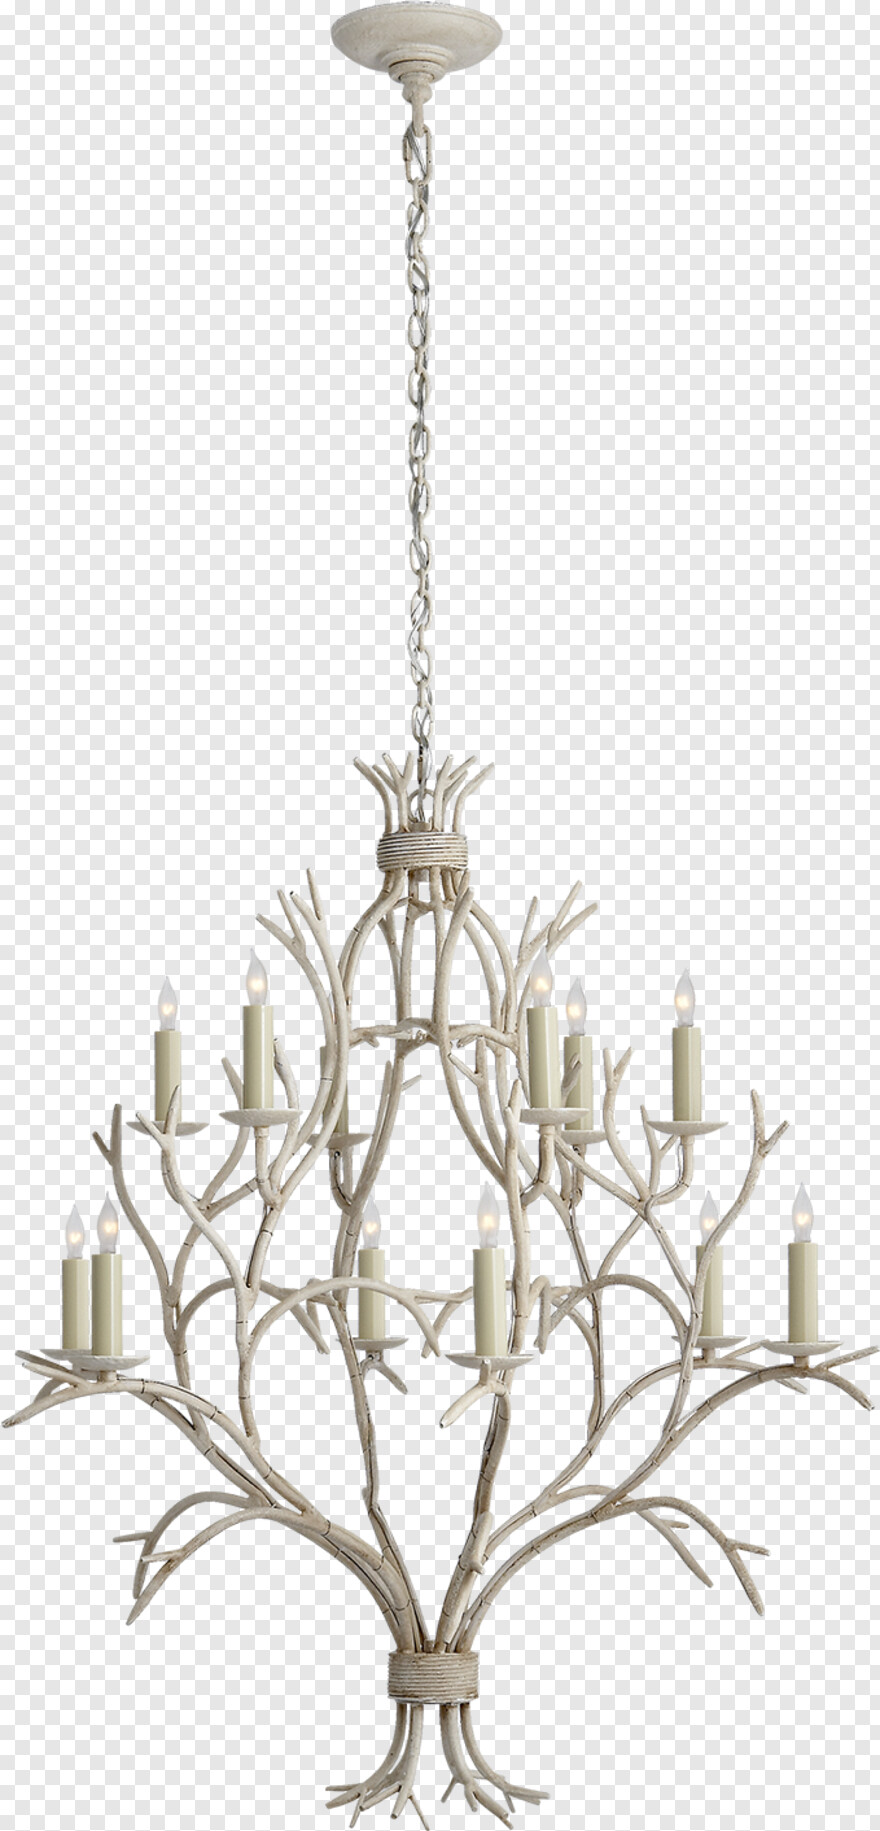 chandelier # 315002